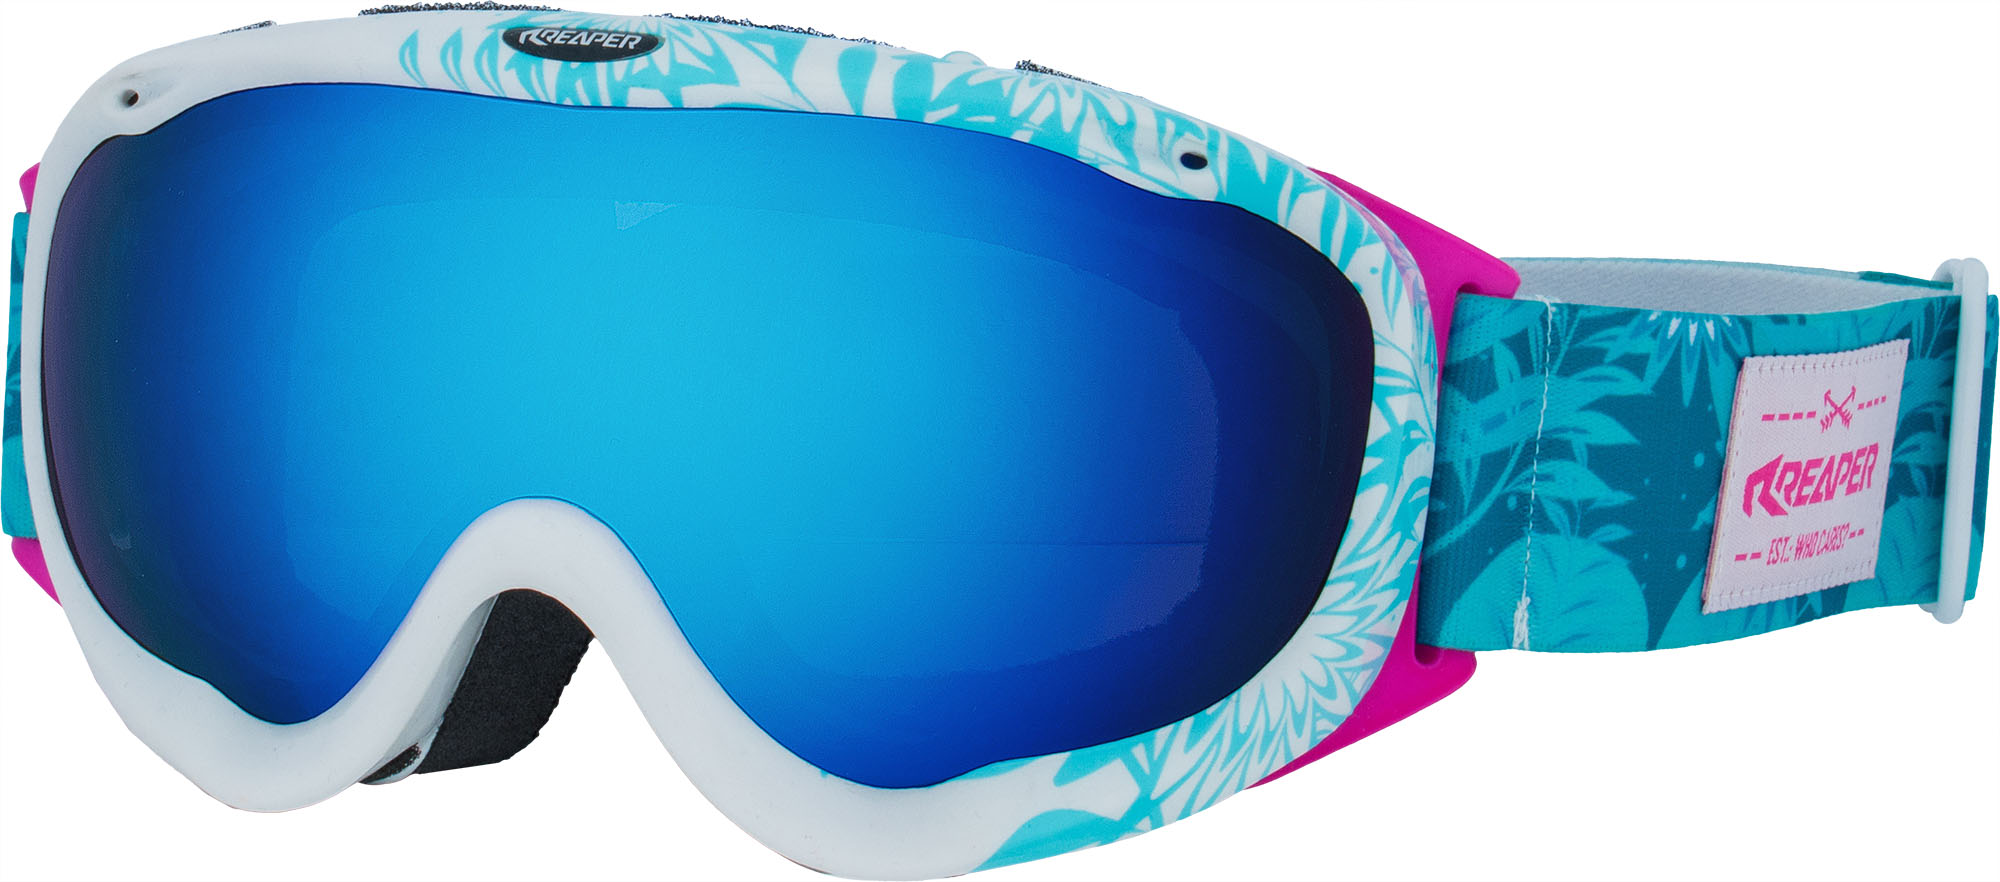 Dámské snowboardové brýle